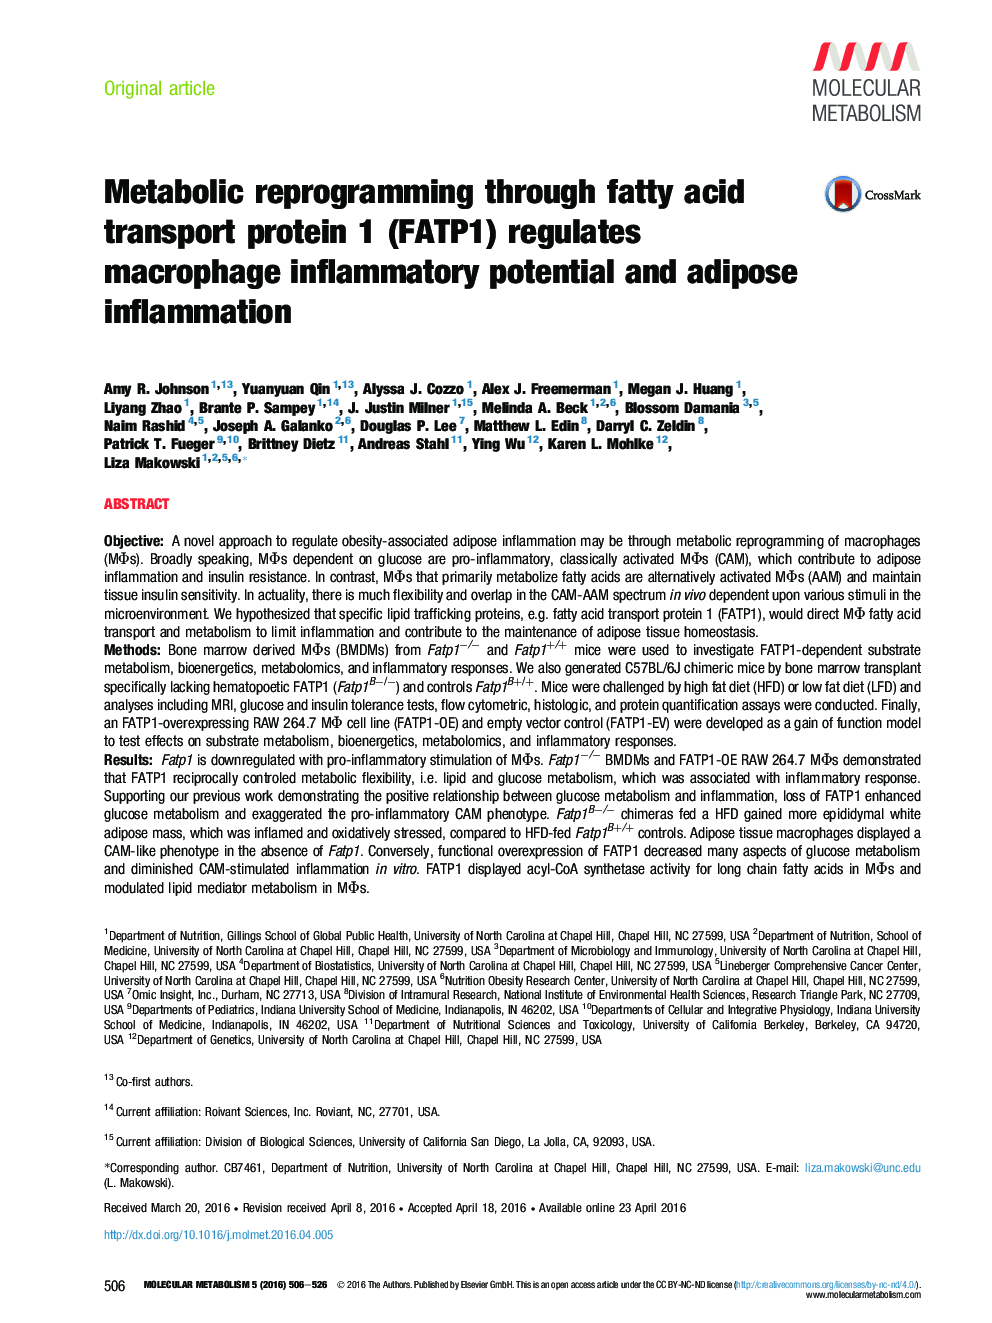 برنامه ریزی متابولیک از طریق پروتئین حمل و نقل اسید چرب 1 (FATP1) تنظیم پتانسیل التهابی ماکروفاژ و التهاب چربی